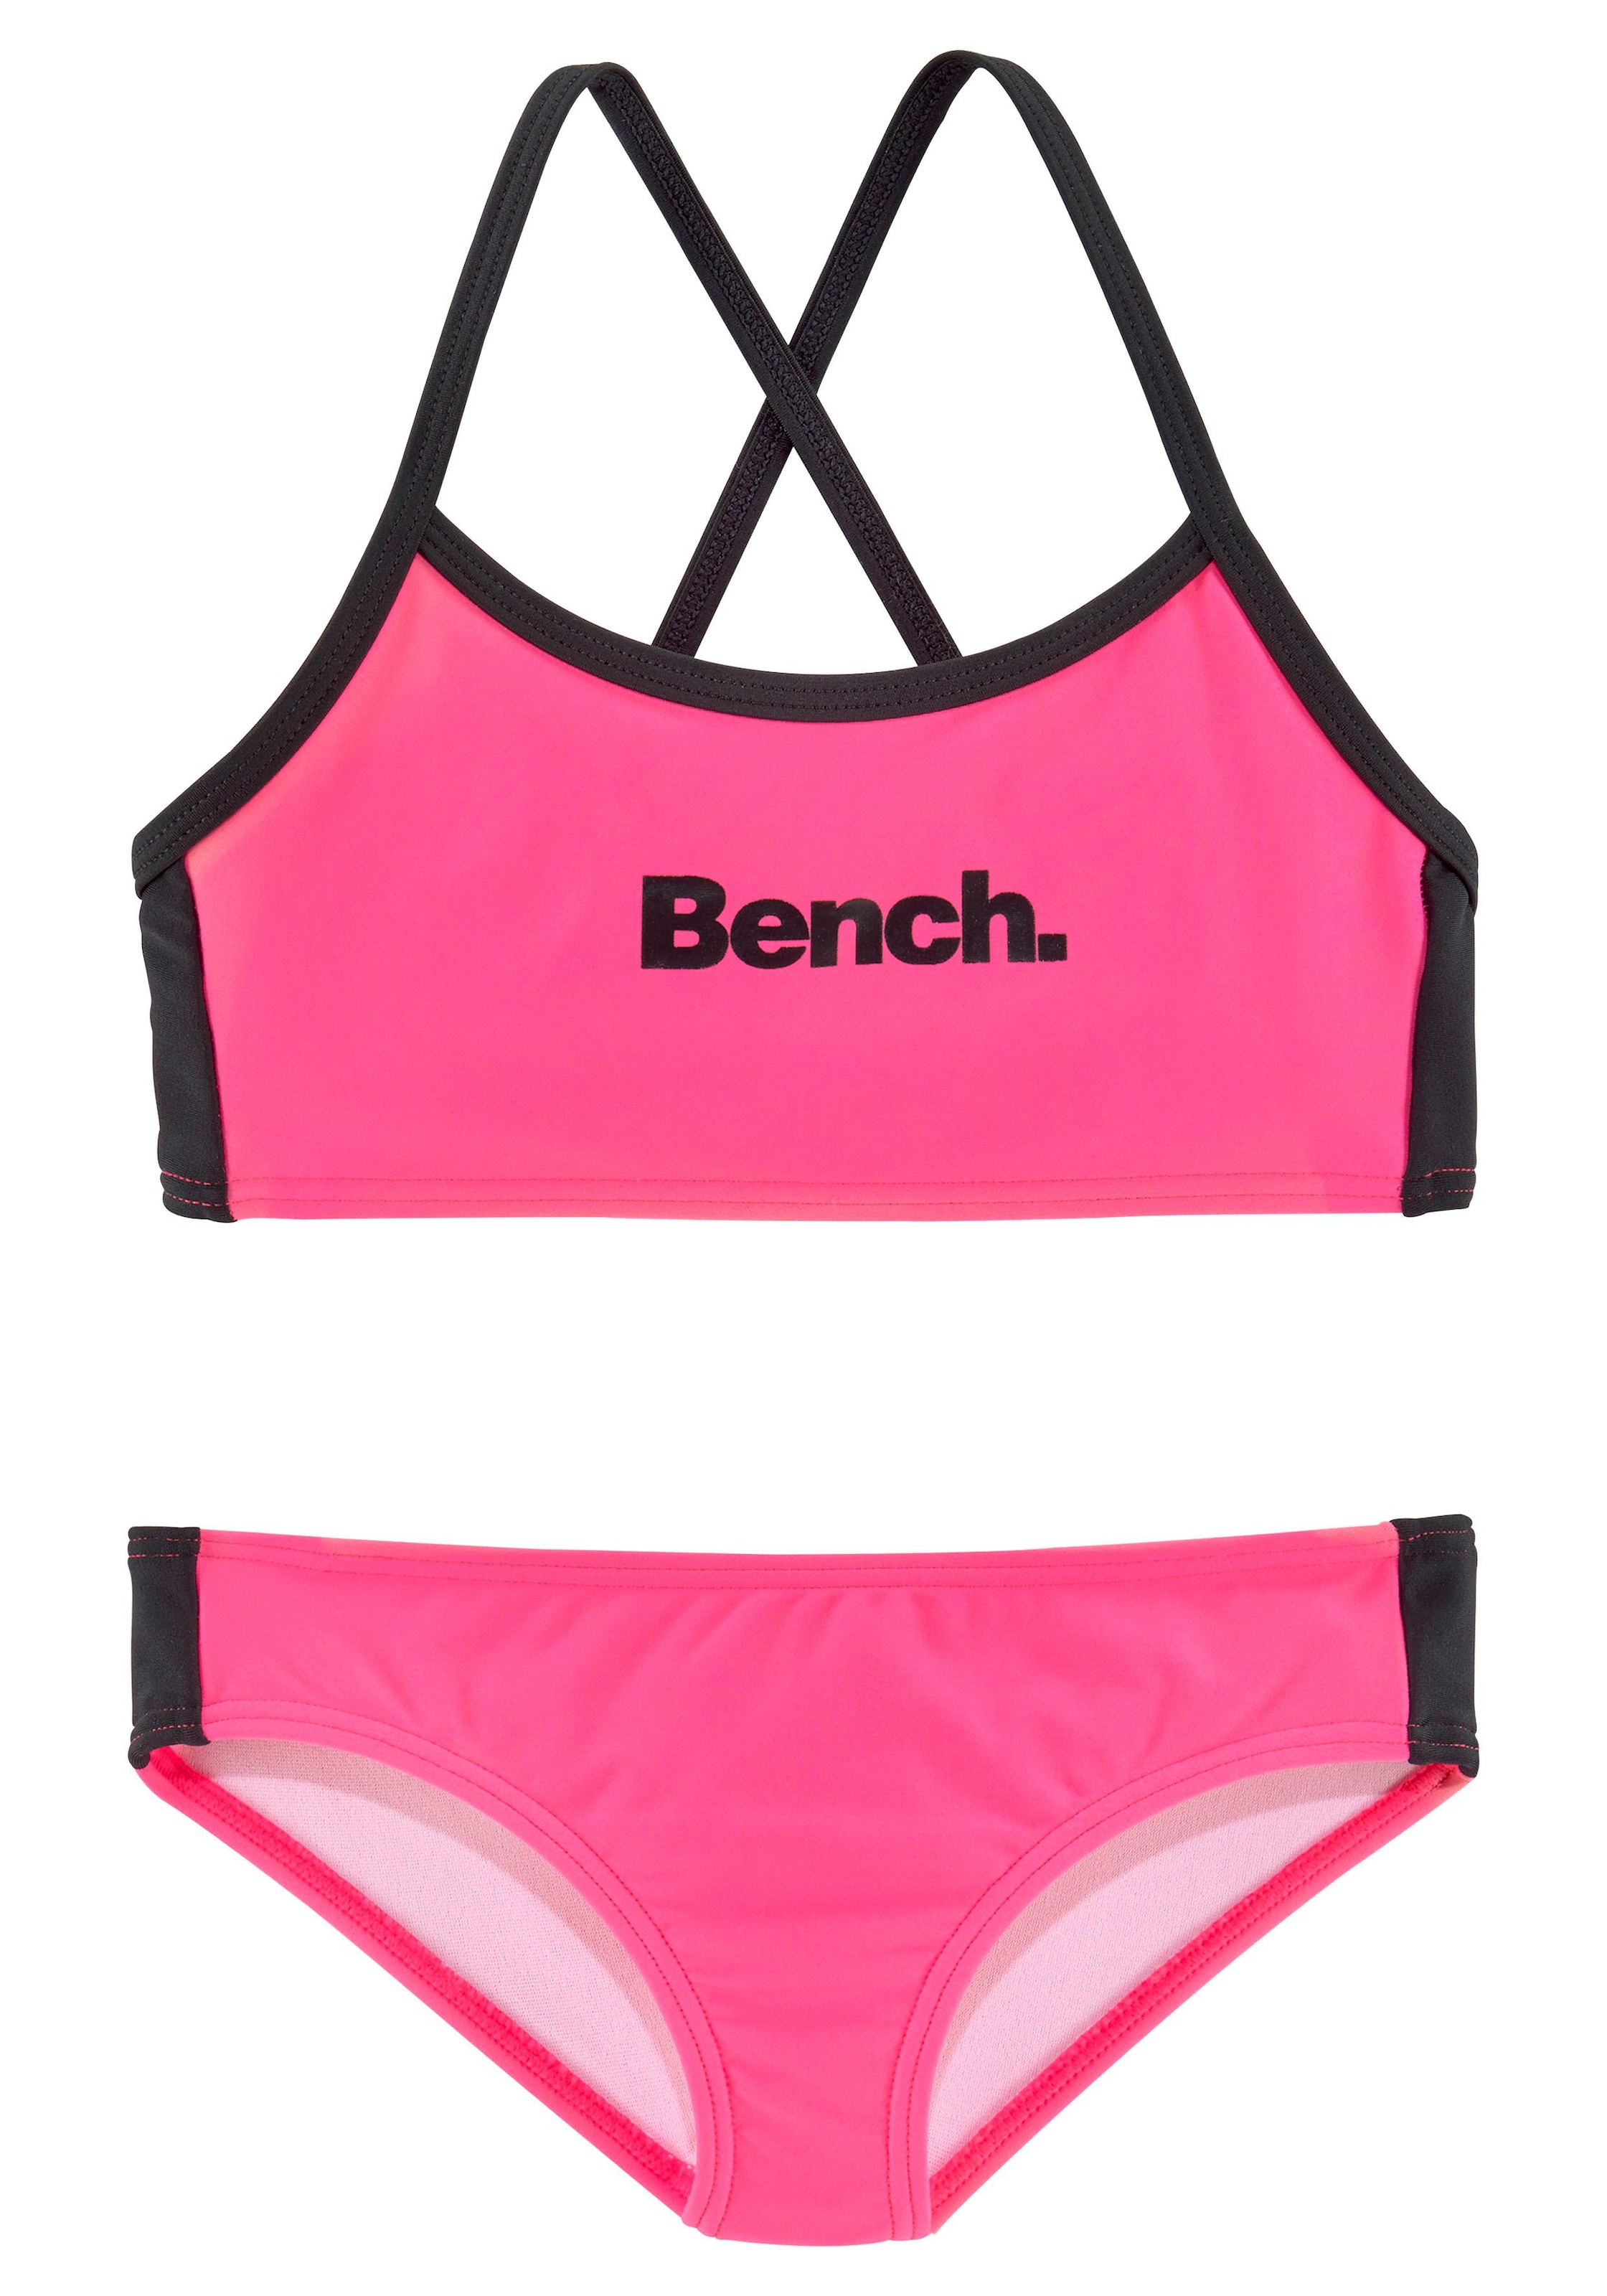 Bench. Bustier-Bikini, mit gekreuzten Trägern OTTO bei